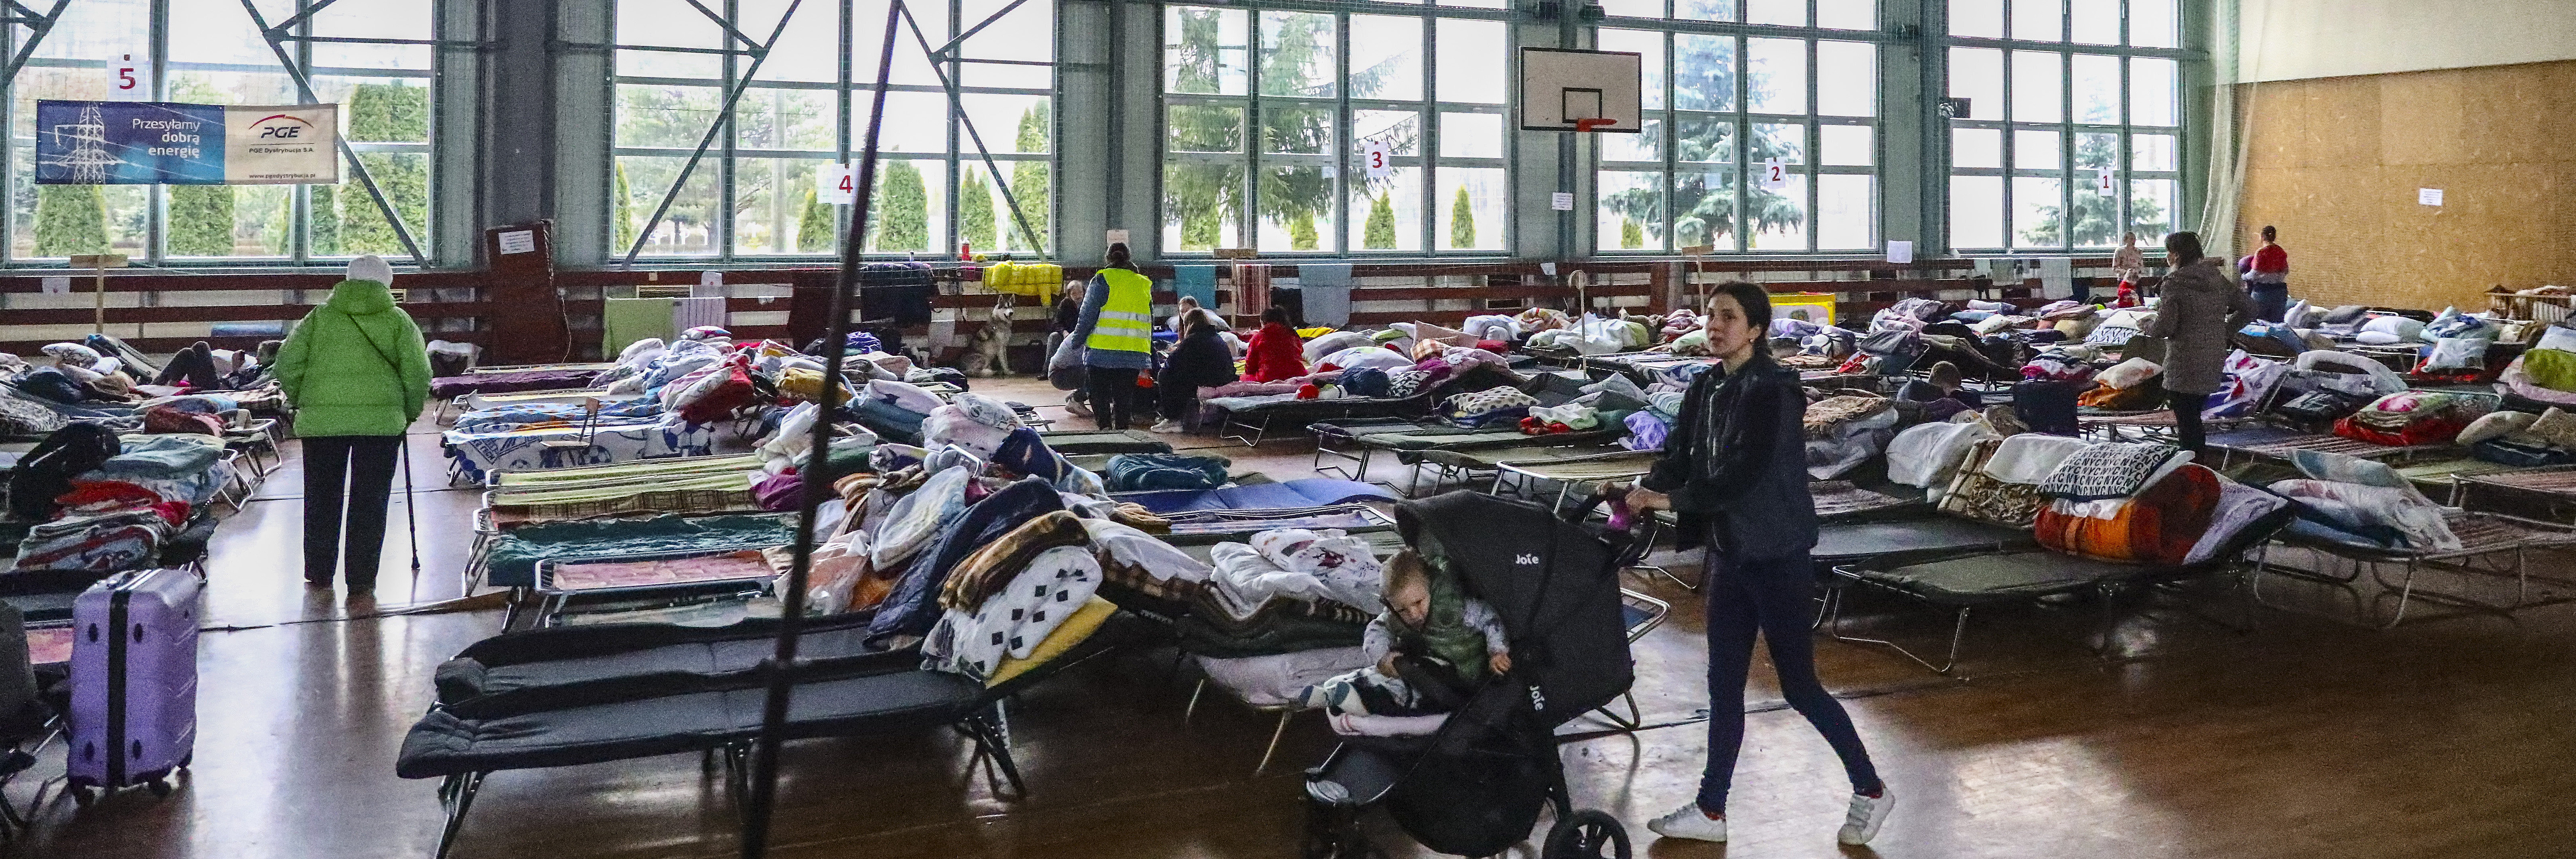 Flüchtlinge aus der Ukraine in einer Sporthalle in Polen. Feldbetten und ein Schild "Autobus" und Kinderwägen sind zu sehen.